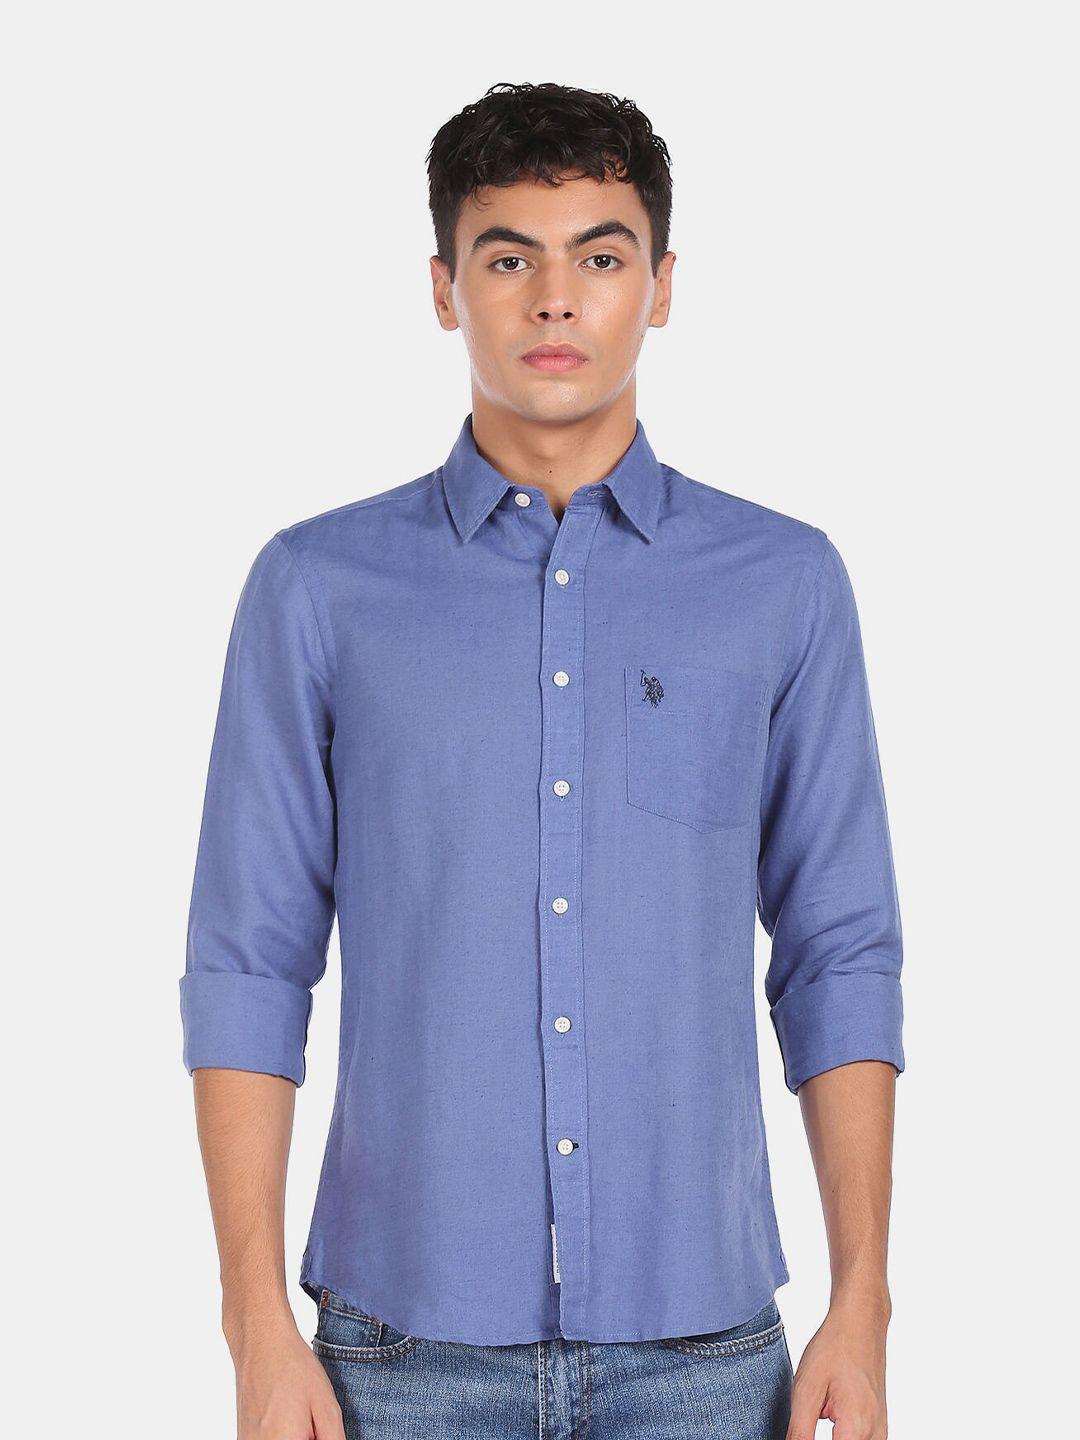 u s polo assn men regular fit blue casual shirt